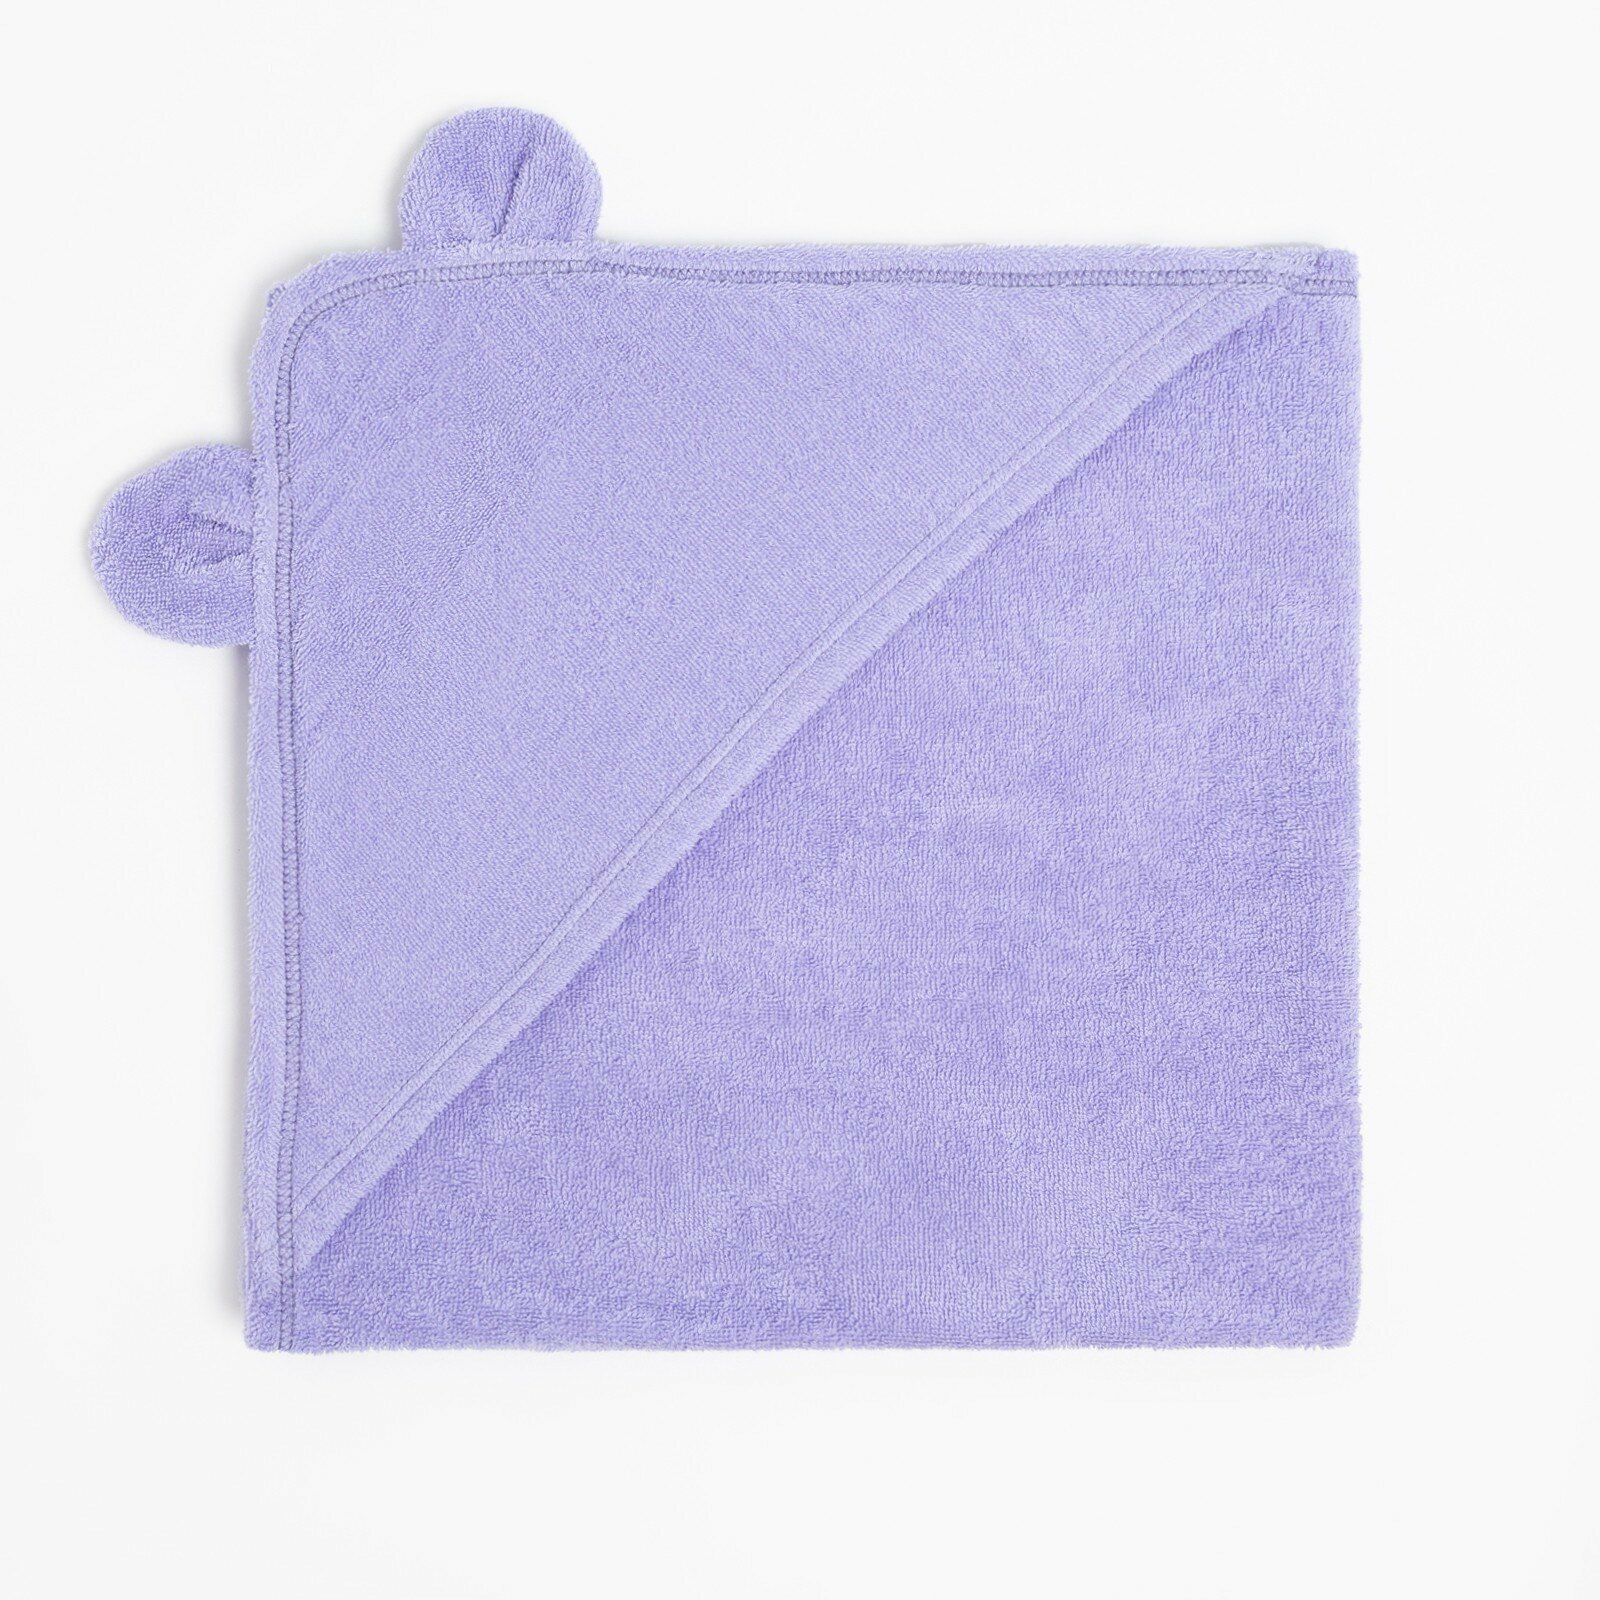 Набор для купания (полотенце-уголок 85*85±2см, полотенце 40*55см, рукавица), цвет сиреневый